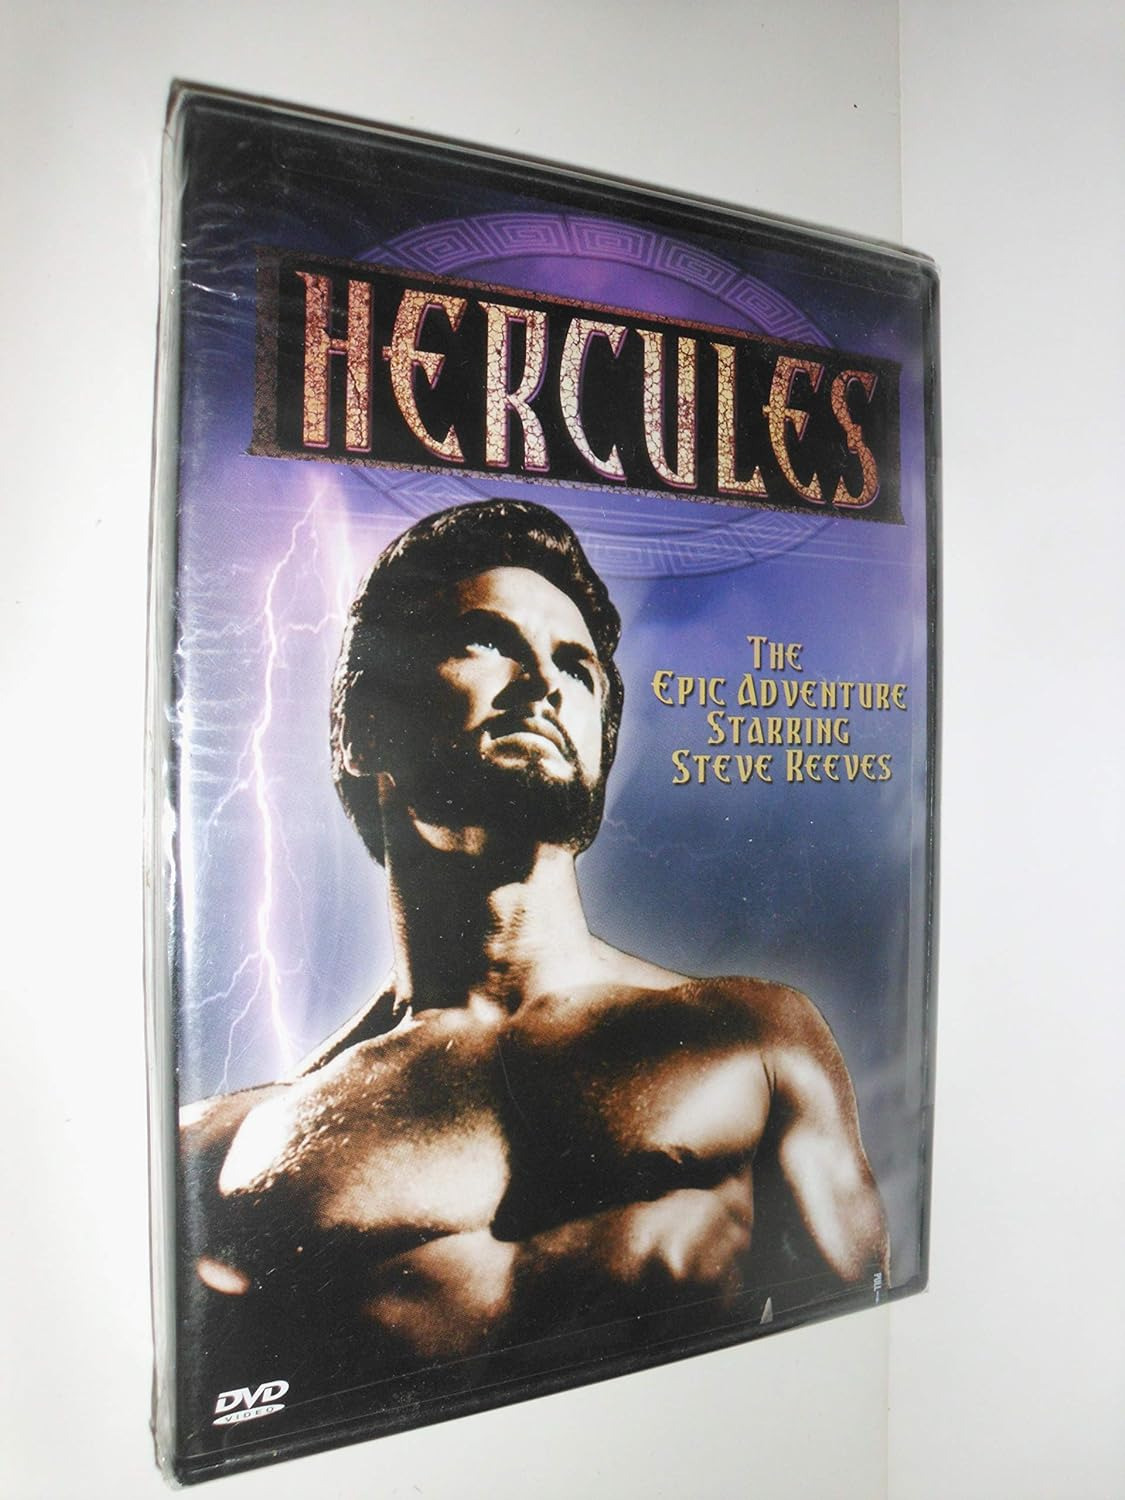 Hercules Hercules